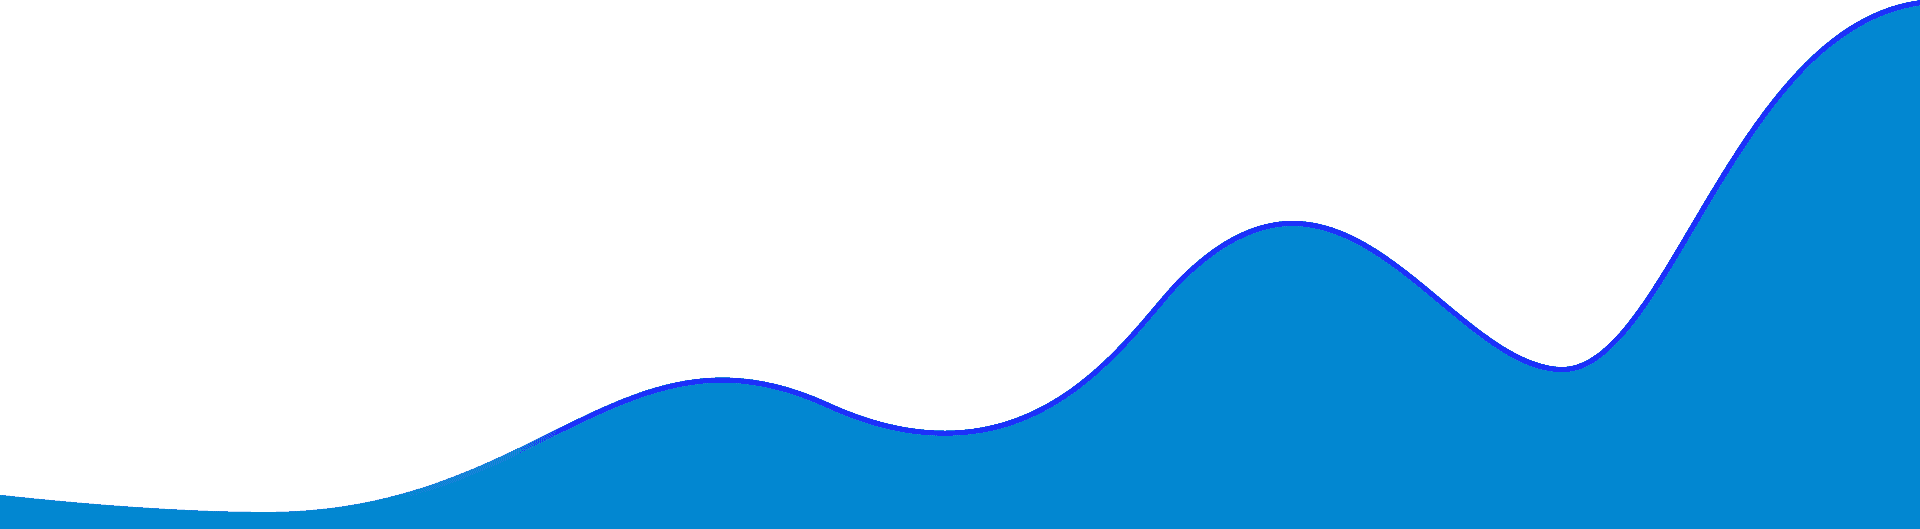 dark blue diagram